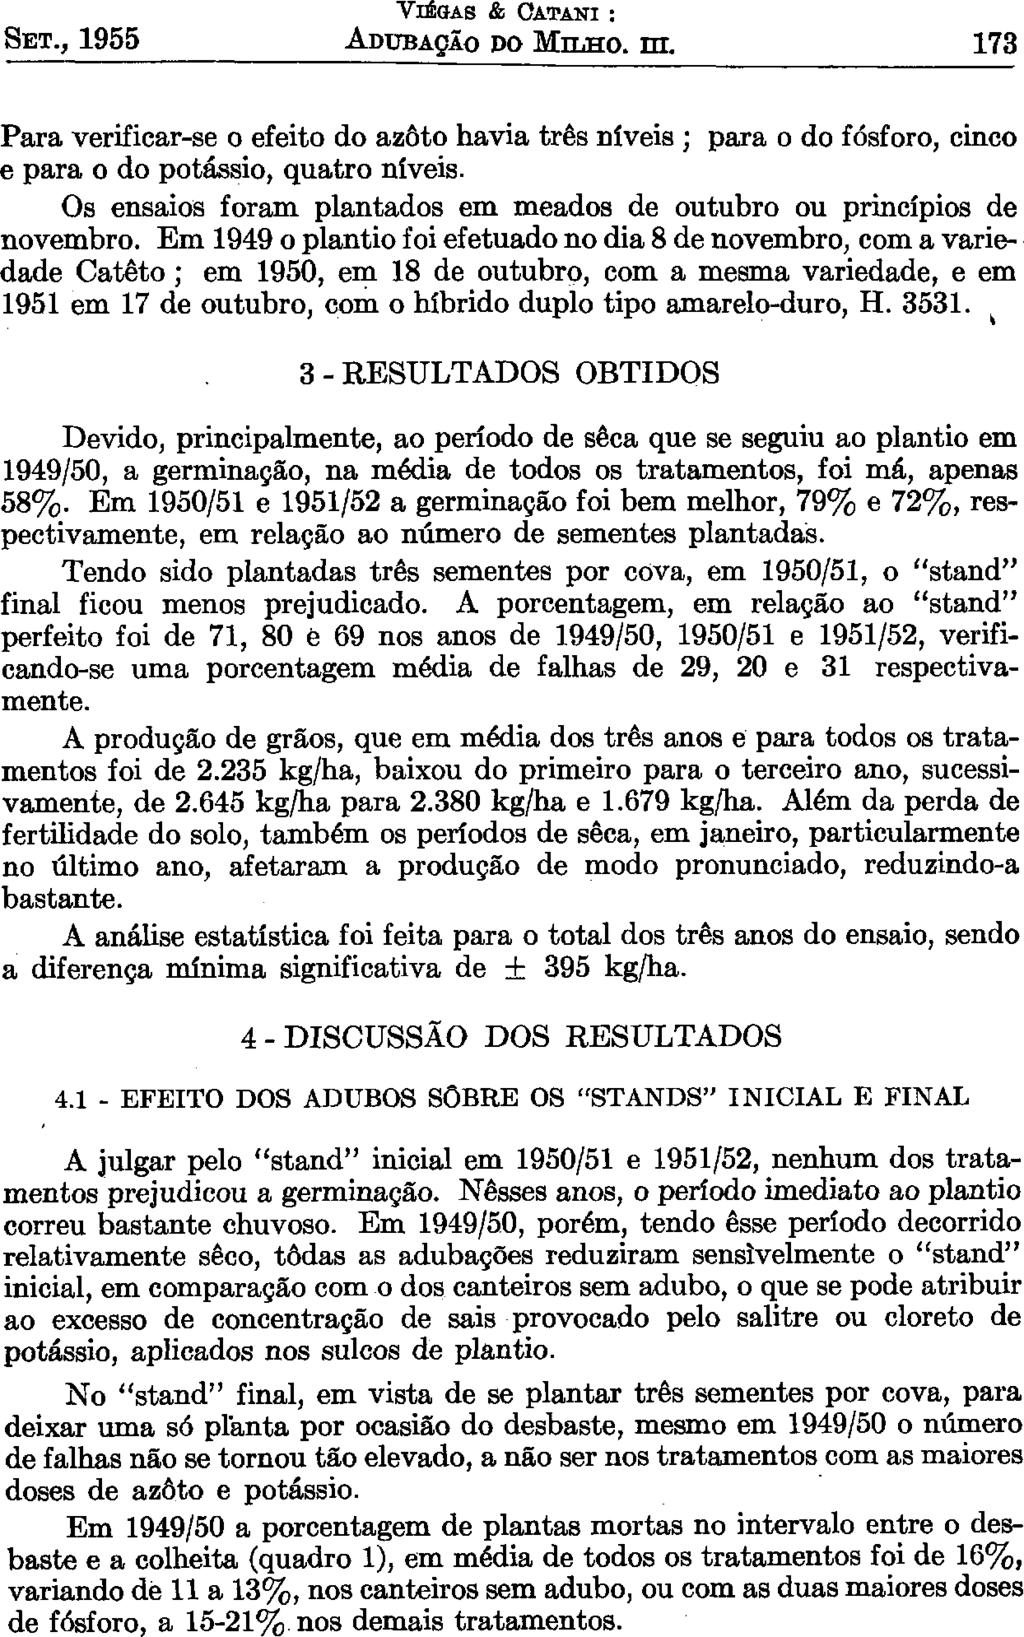 SET., 1955 VIEGAS & OATANI : ADUBAÇÃO DO MILHO. m. 173 Para verificar-se o efeito do azôto havia três níveis ; para o do fósforo, cinco e para o do potássio, quatro níveis.